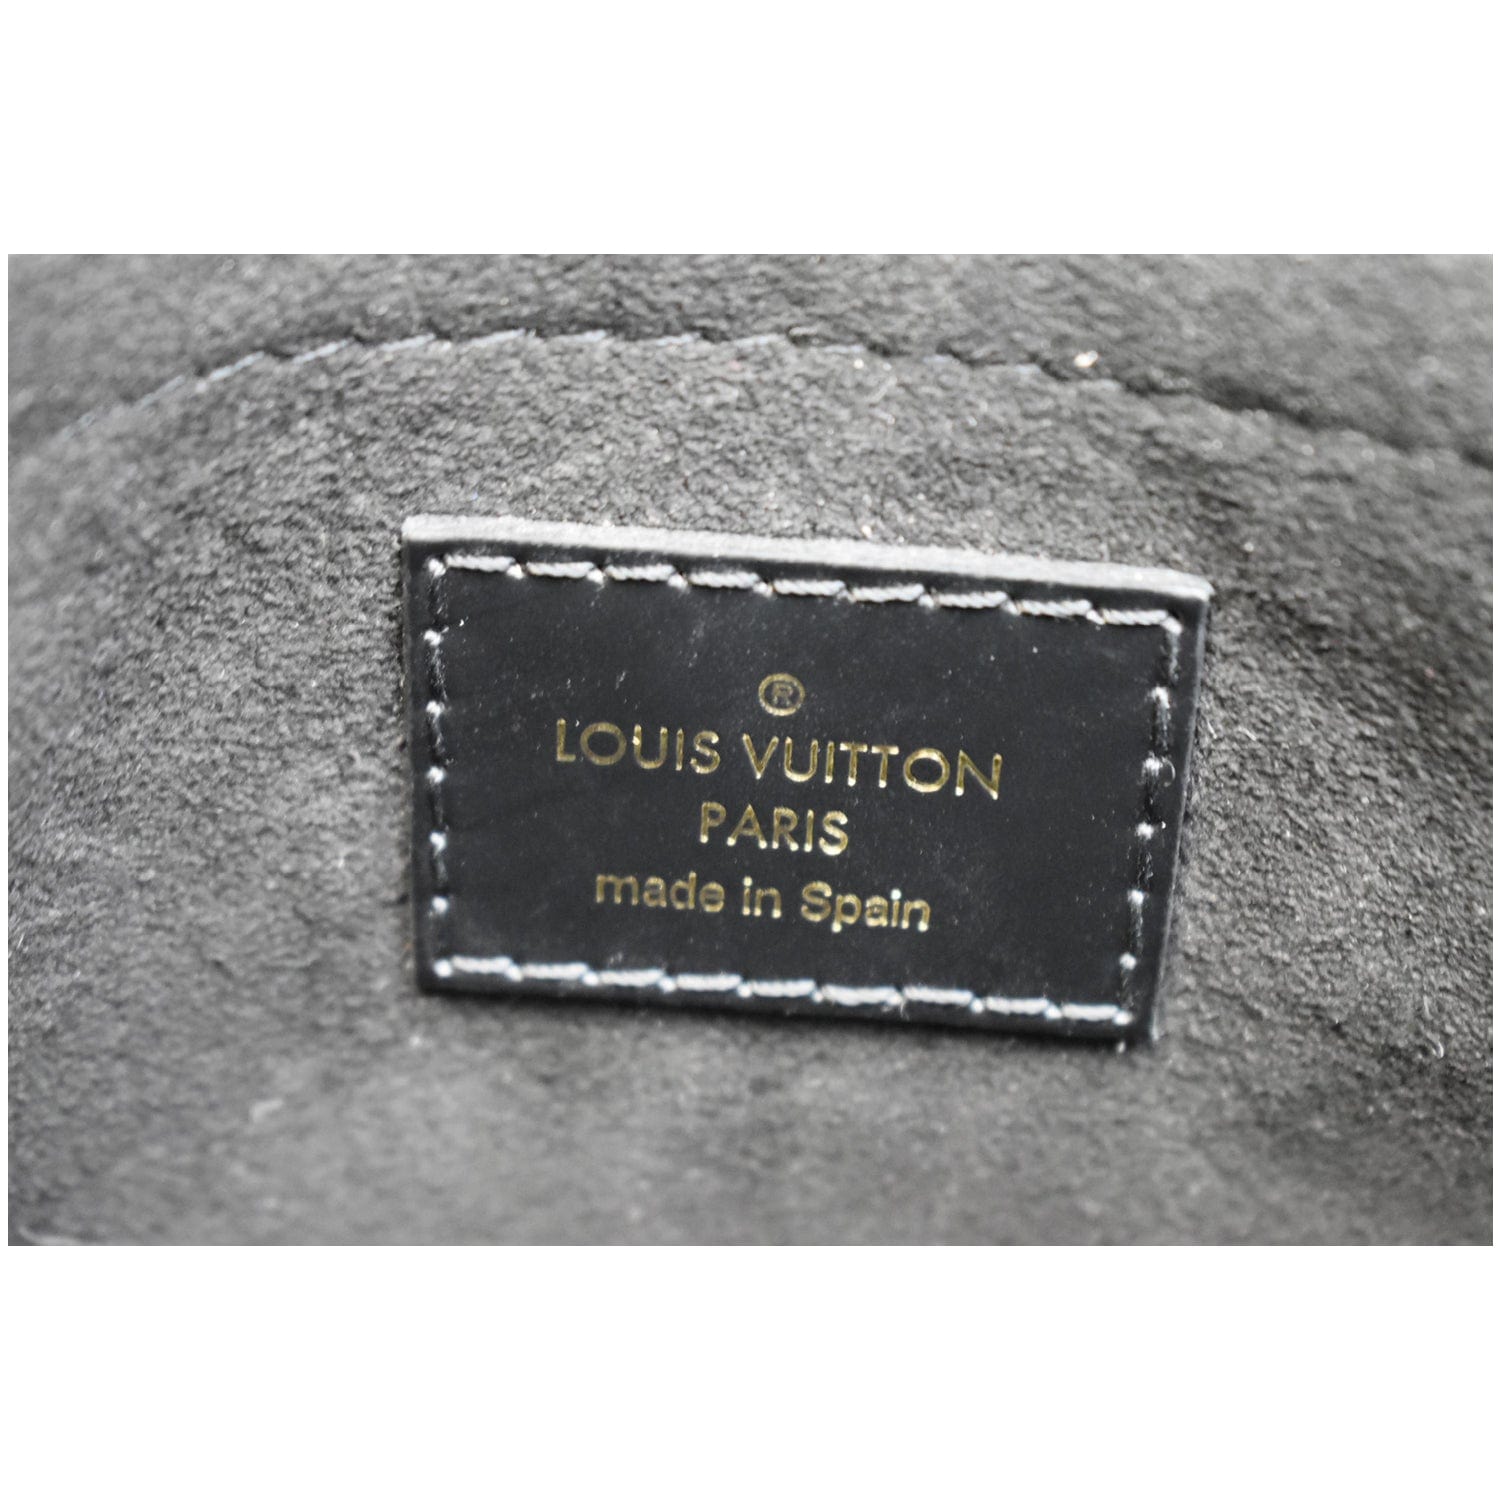 Only 558.00 usd for LOUIS VUITTON Epi Monogram Saint Michel Online at the  Shop